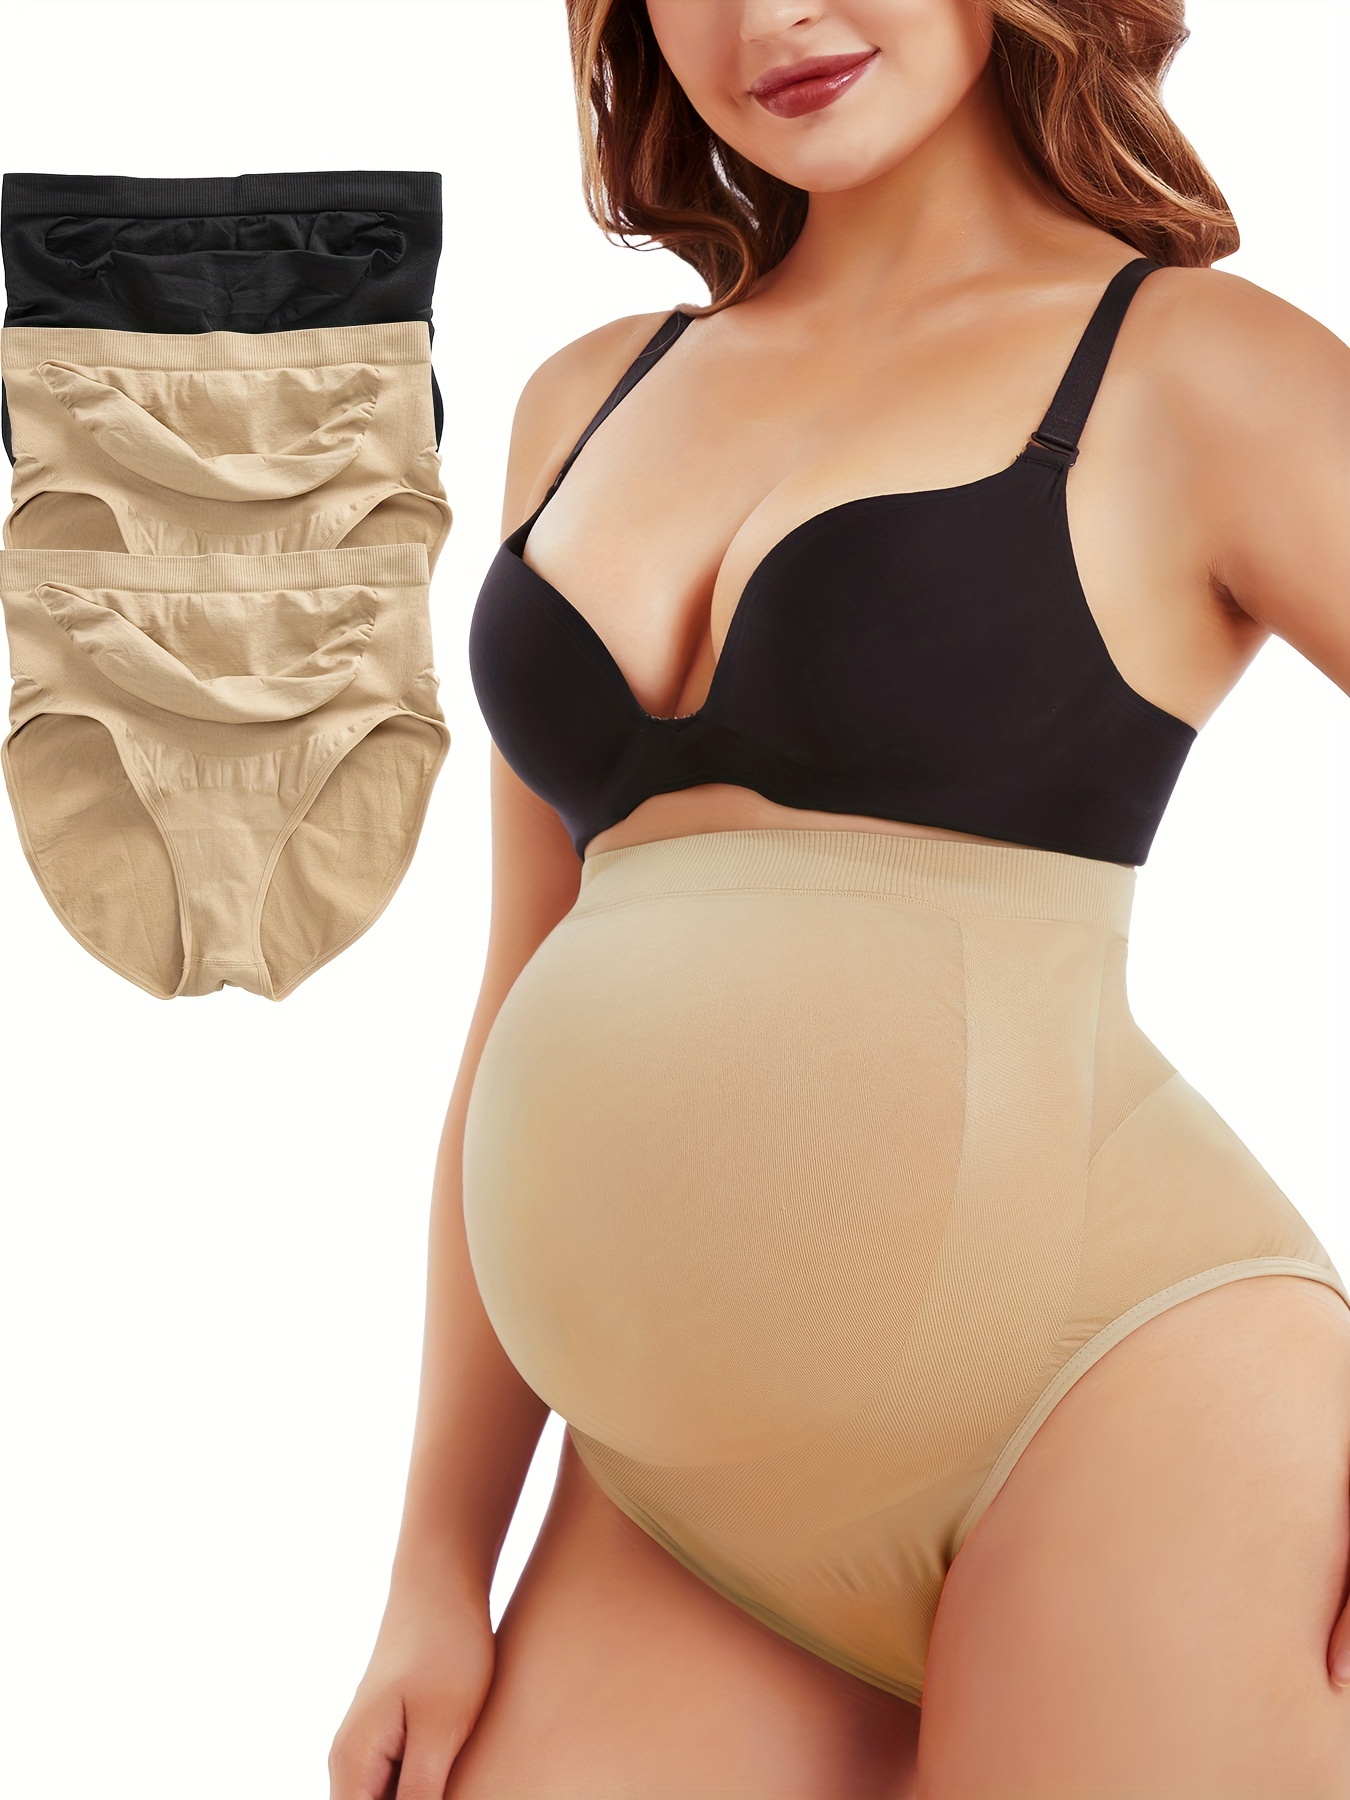 Underwear for Pregnant Women